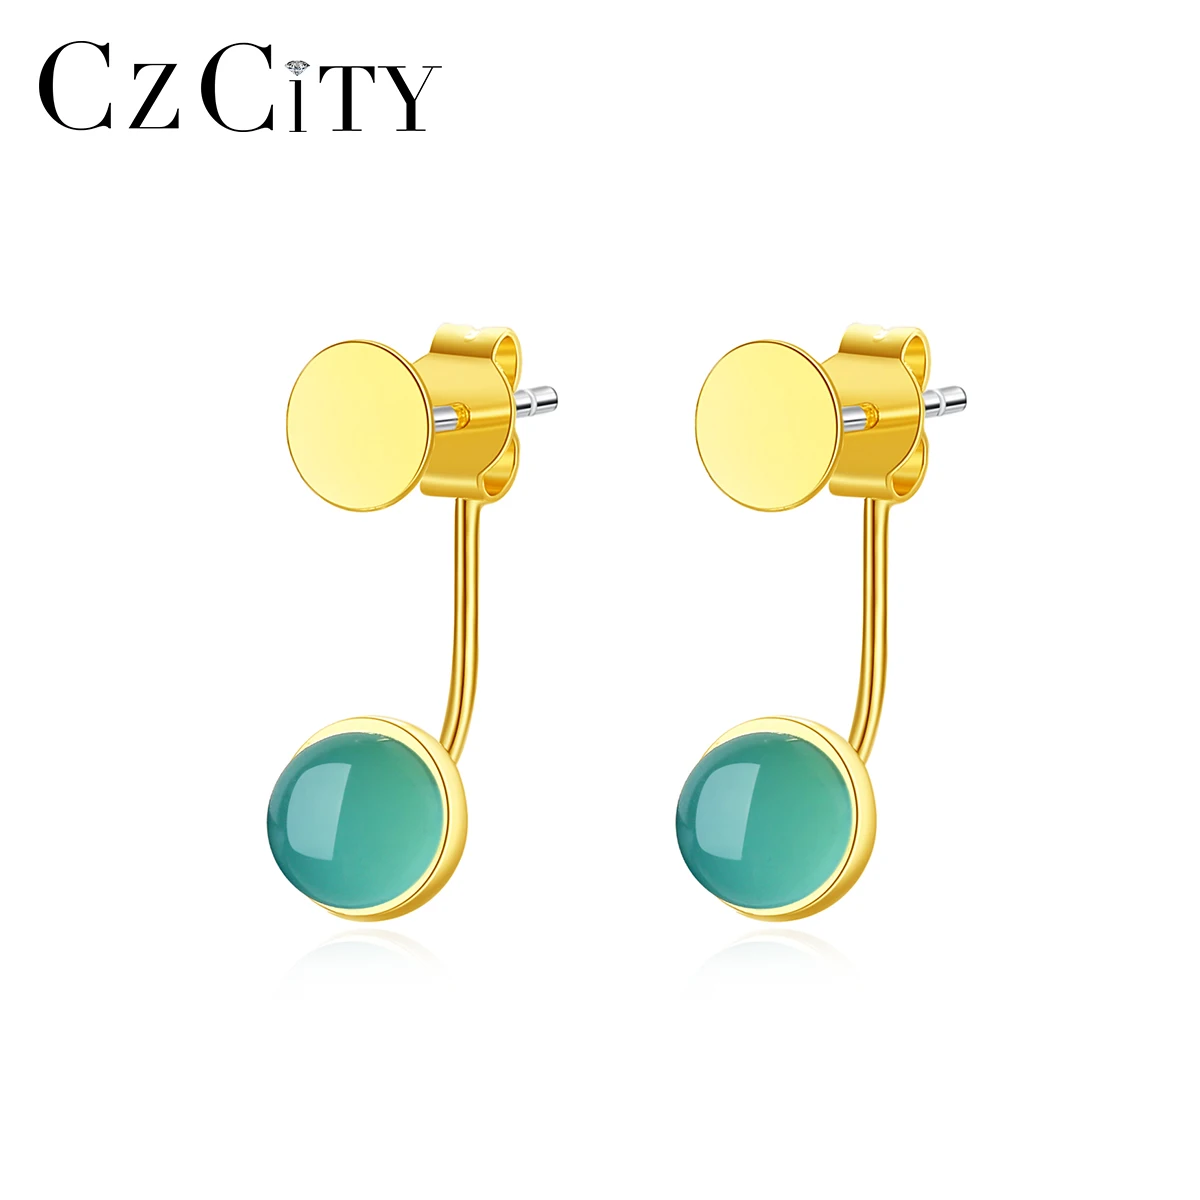 

CZCITY Elegant Crystal Earrings Jewelry 925 Sterling Silver 18K Gold Plated Hoop Stud Earrings for Women Drop Earrings